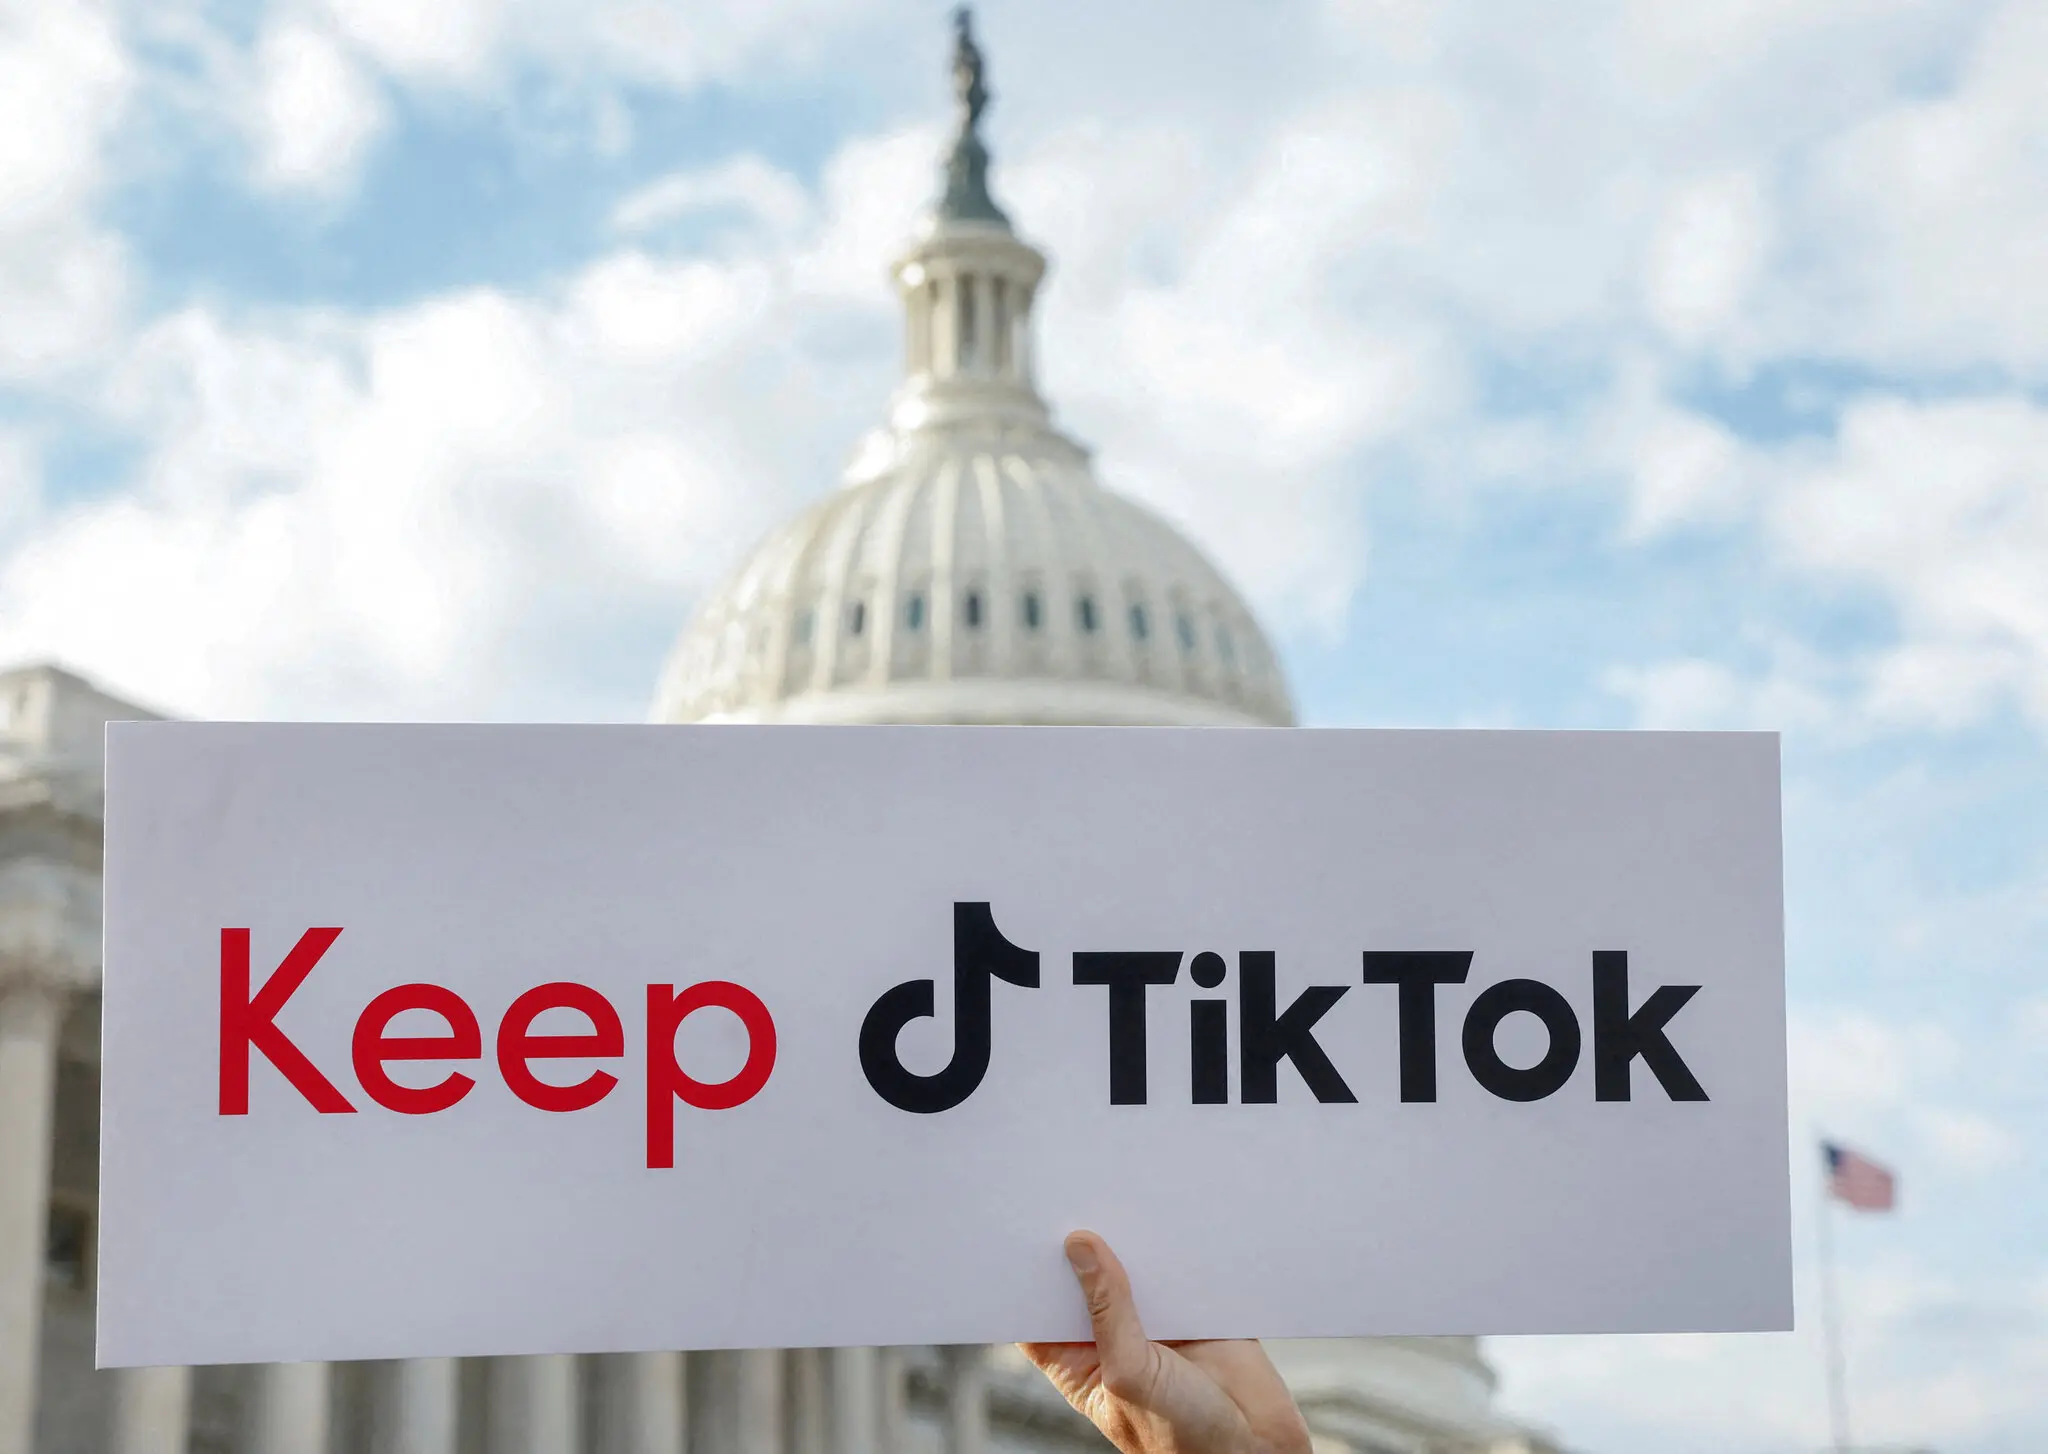 Thượng viện Mỹ thông qua dự thảo luật ép ByteDance thoái vốn TikTok, có 270 ngày trước khi bị cấm